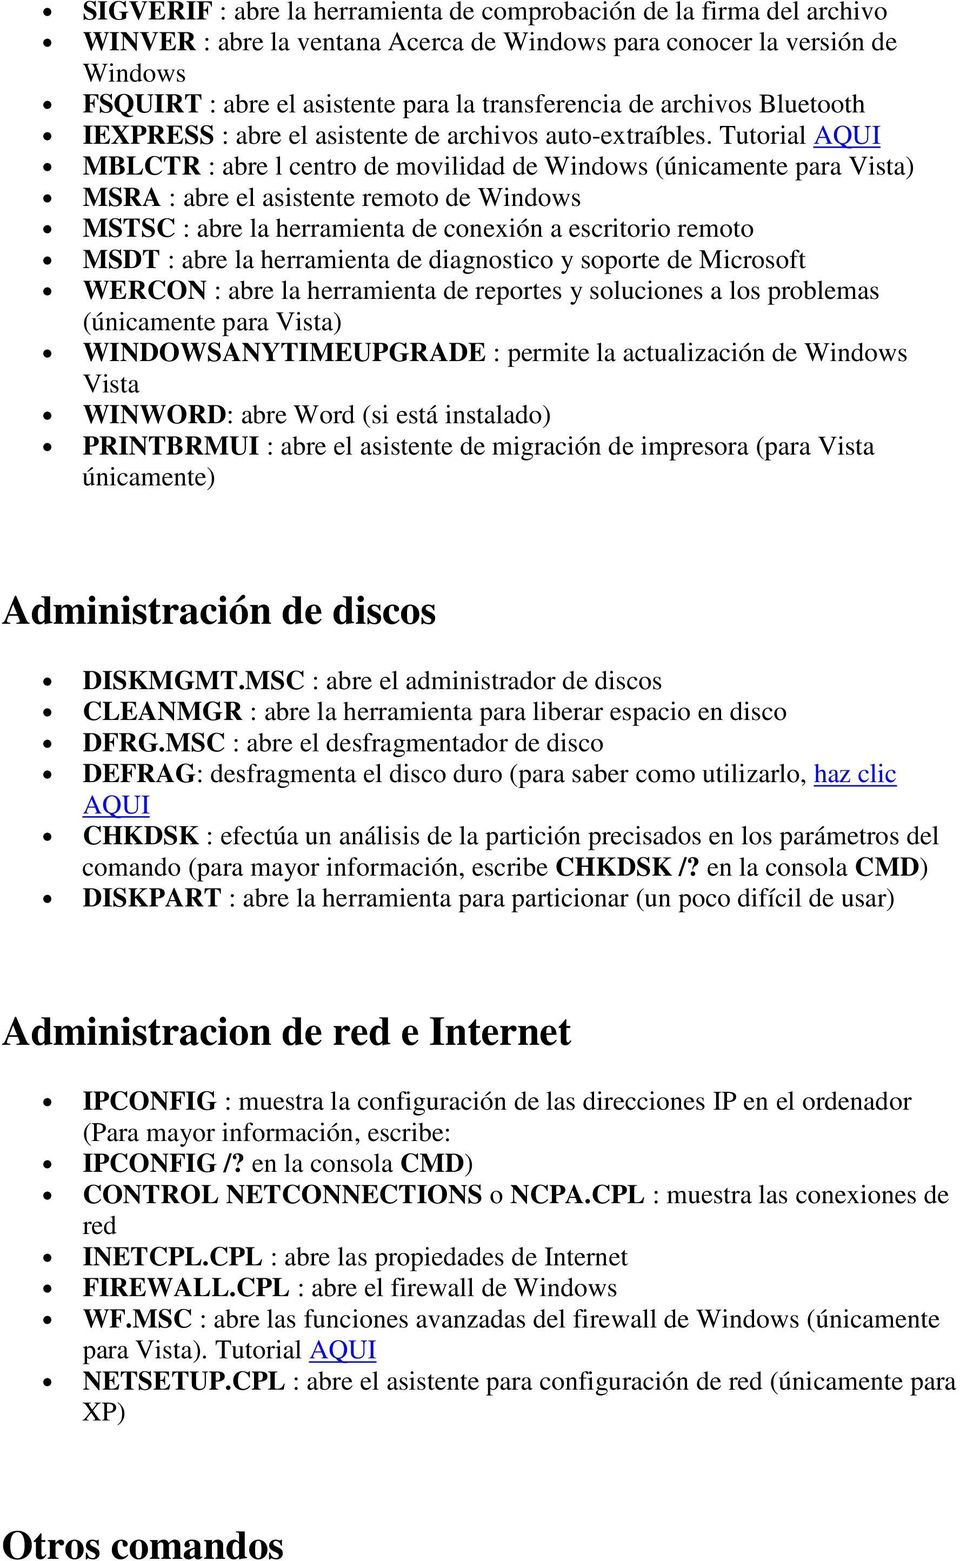 Tutorial AQUI MBLCTR : abre l centro de movilidad de Windows MSRA : abre el asistente remoto de Windows MSTSC : abre la herramienta de conexión a escritorio remoto MSDT : abre la herramienta de